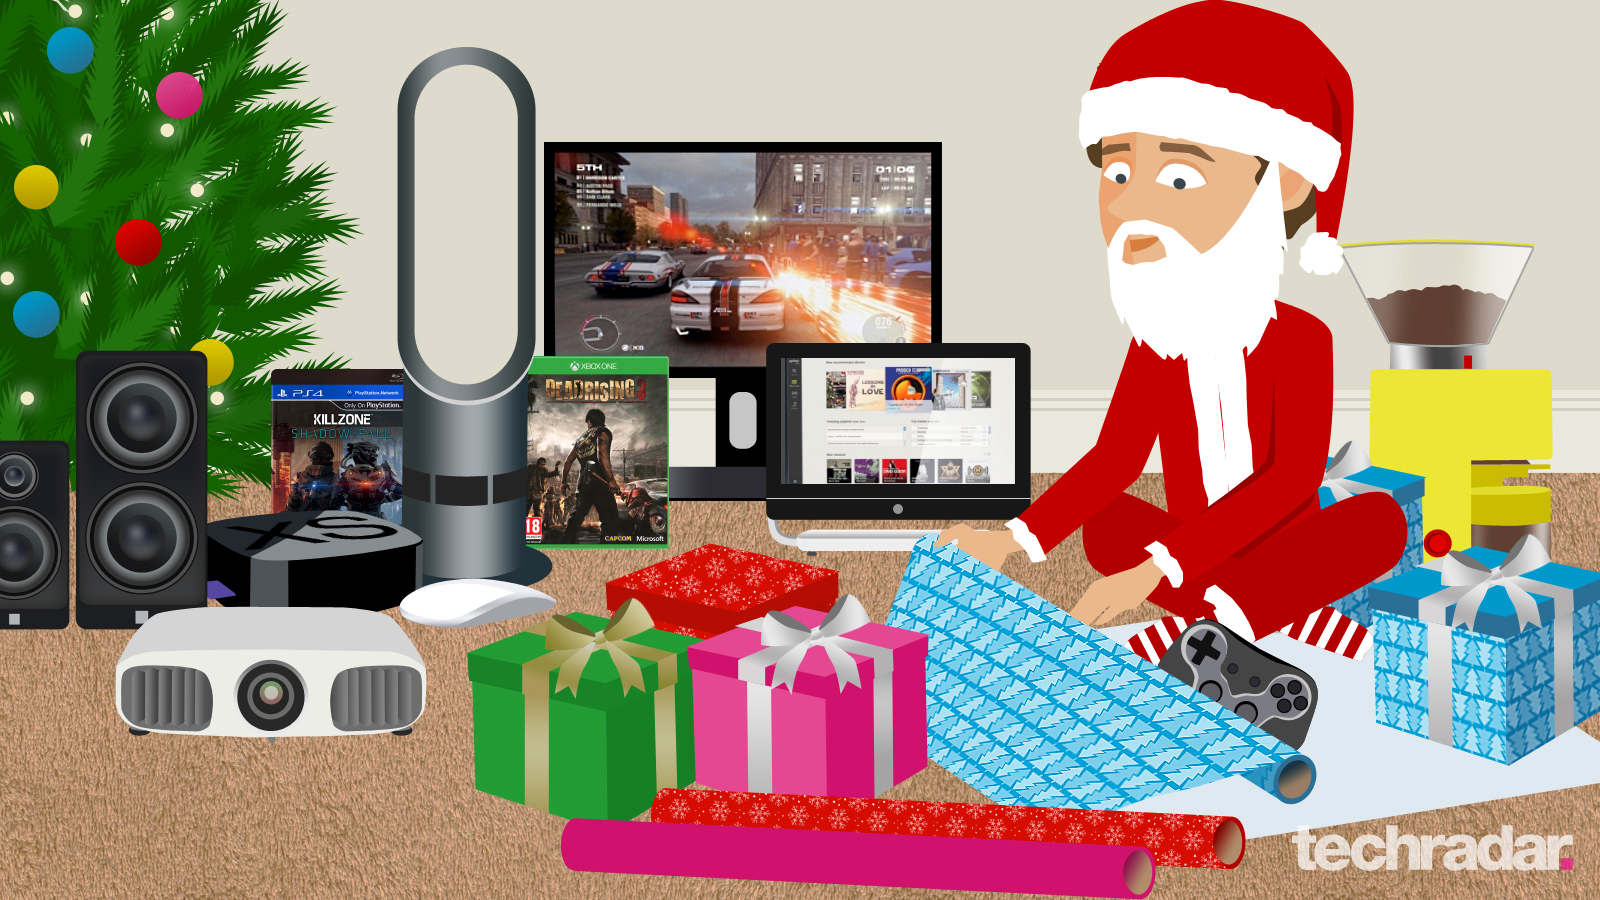 Christmas gift ideas top Christmas gifts for 2014 TechRadar